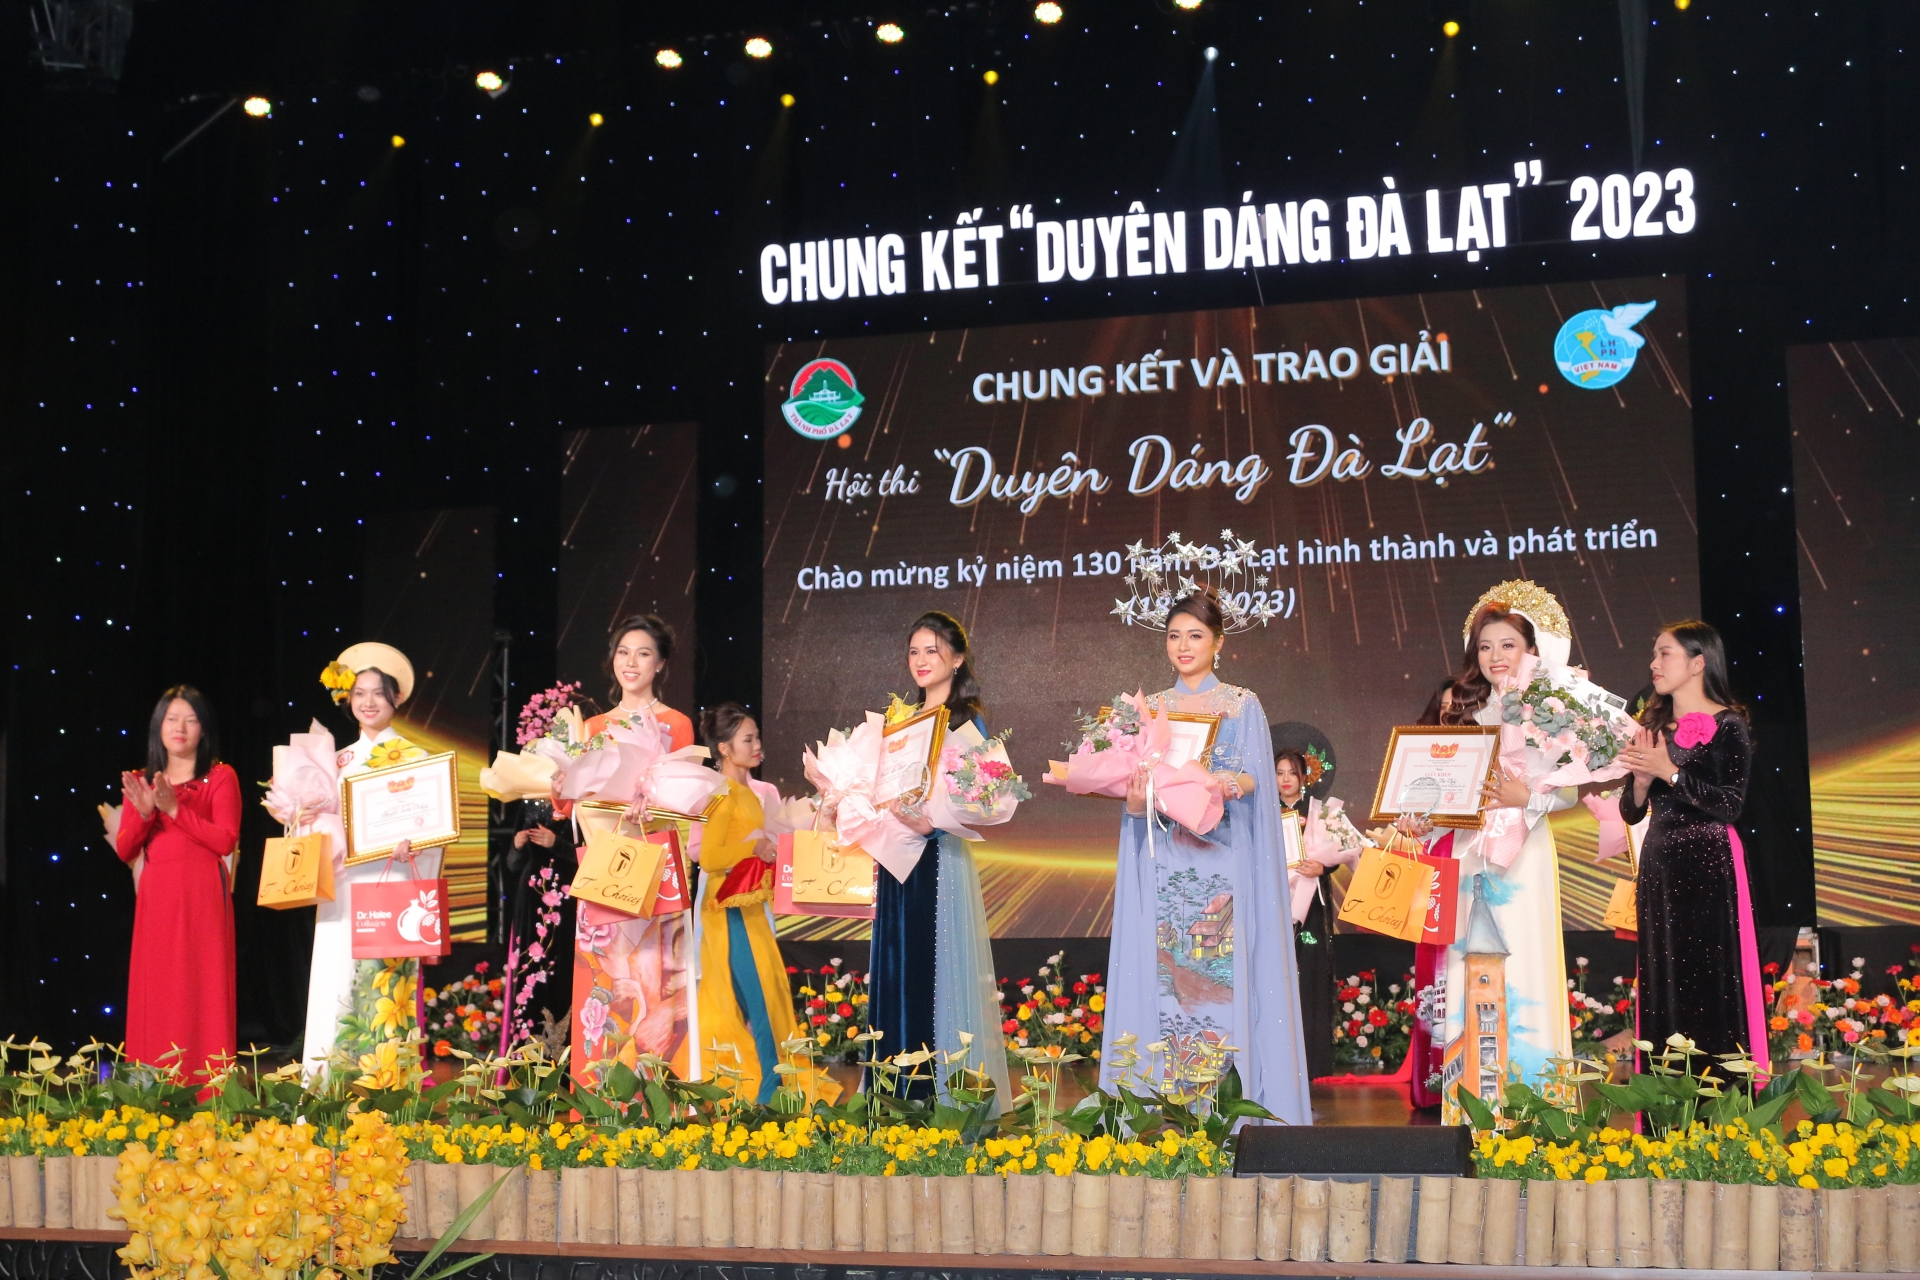 Bà Trần Thị Vũ Loan – Phó Chủ tịch UBND thành phố Đà Lạt và bà Phan Thị Xuân Thảo – Chủ tịch Hội LHPN thành phố trao giải phụ cho các thí sinh